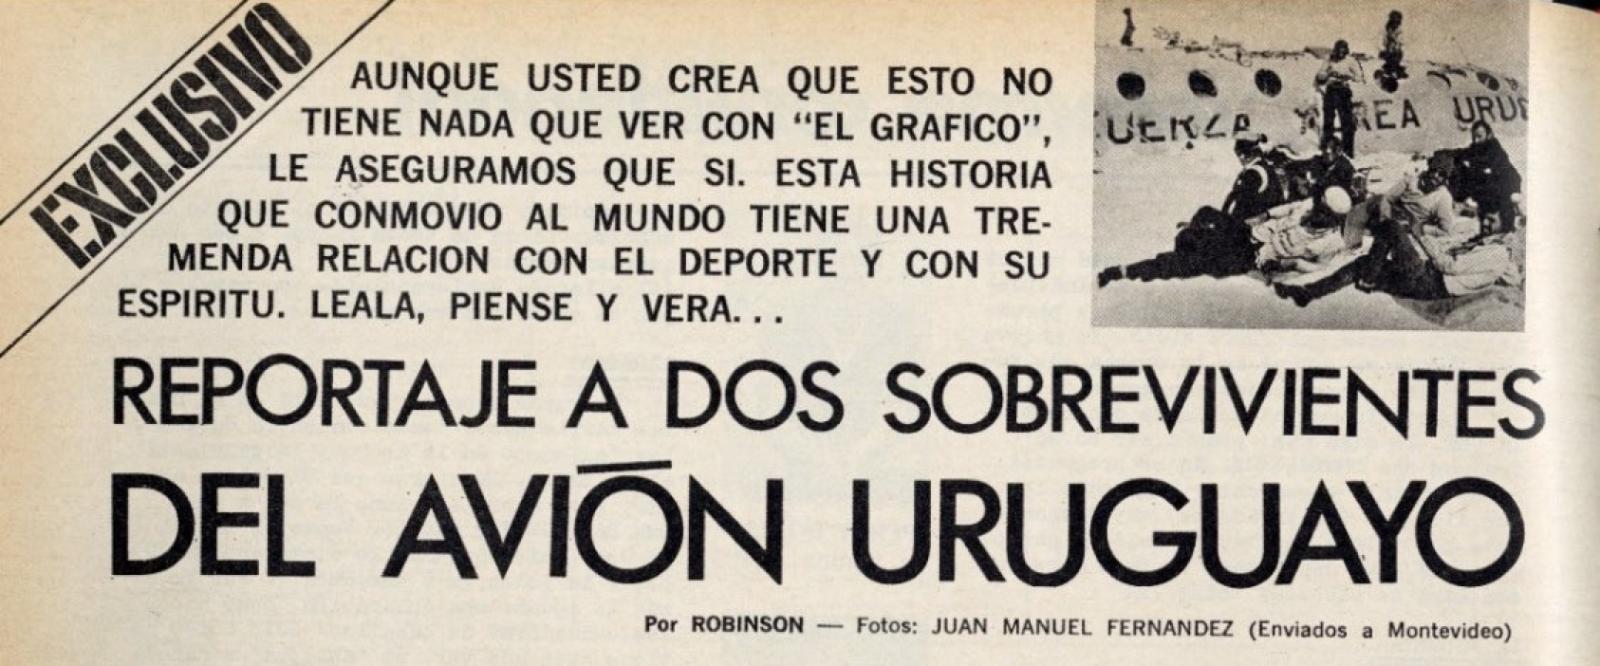 Imagen El Gráfico, edición 2781, 23 de enero de 1973.